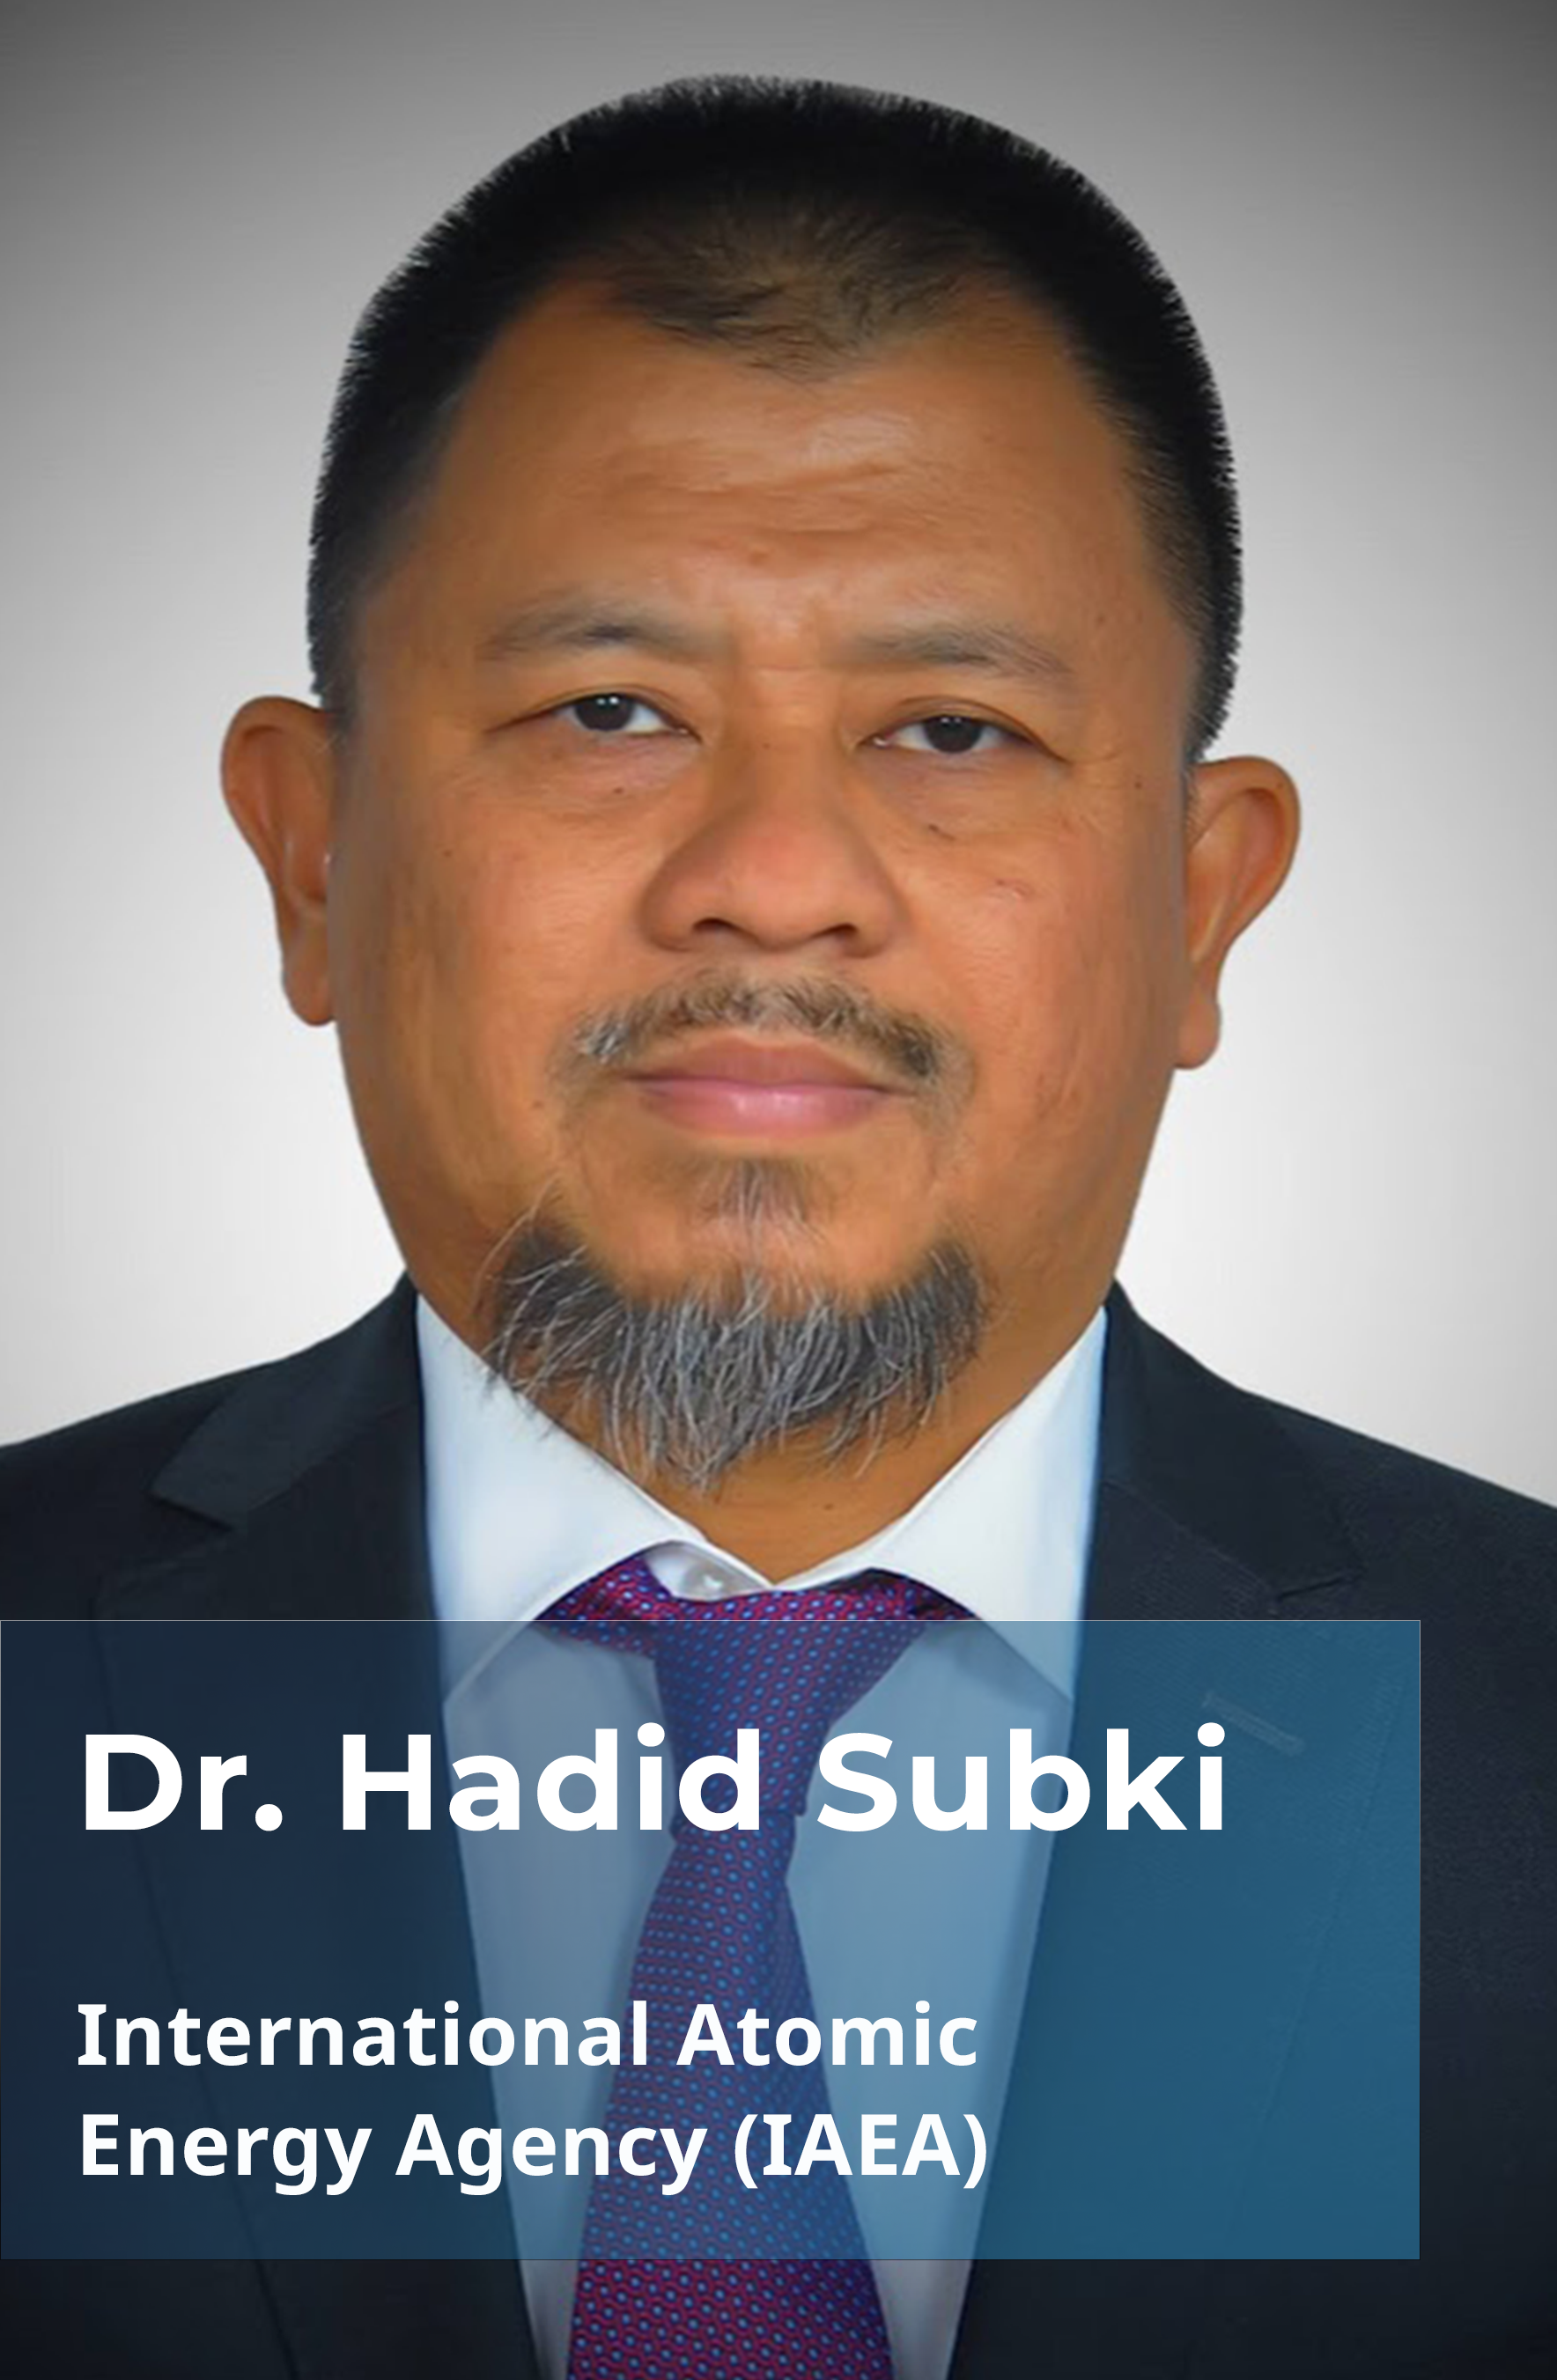 Dr. Hadid Subki